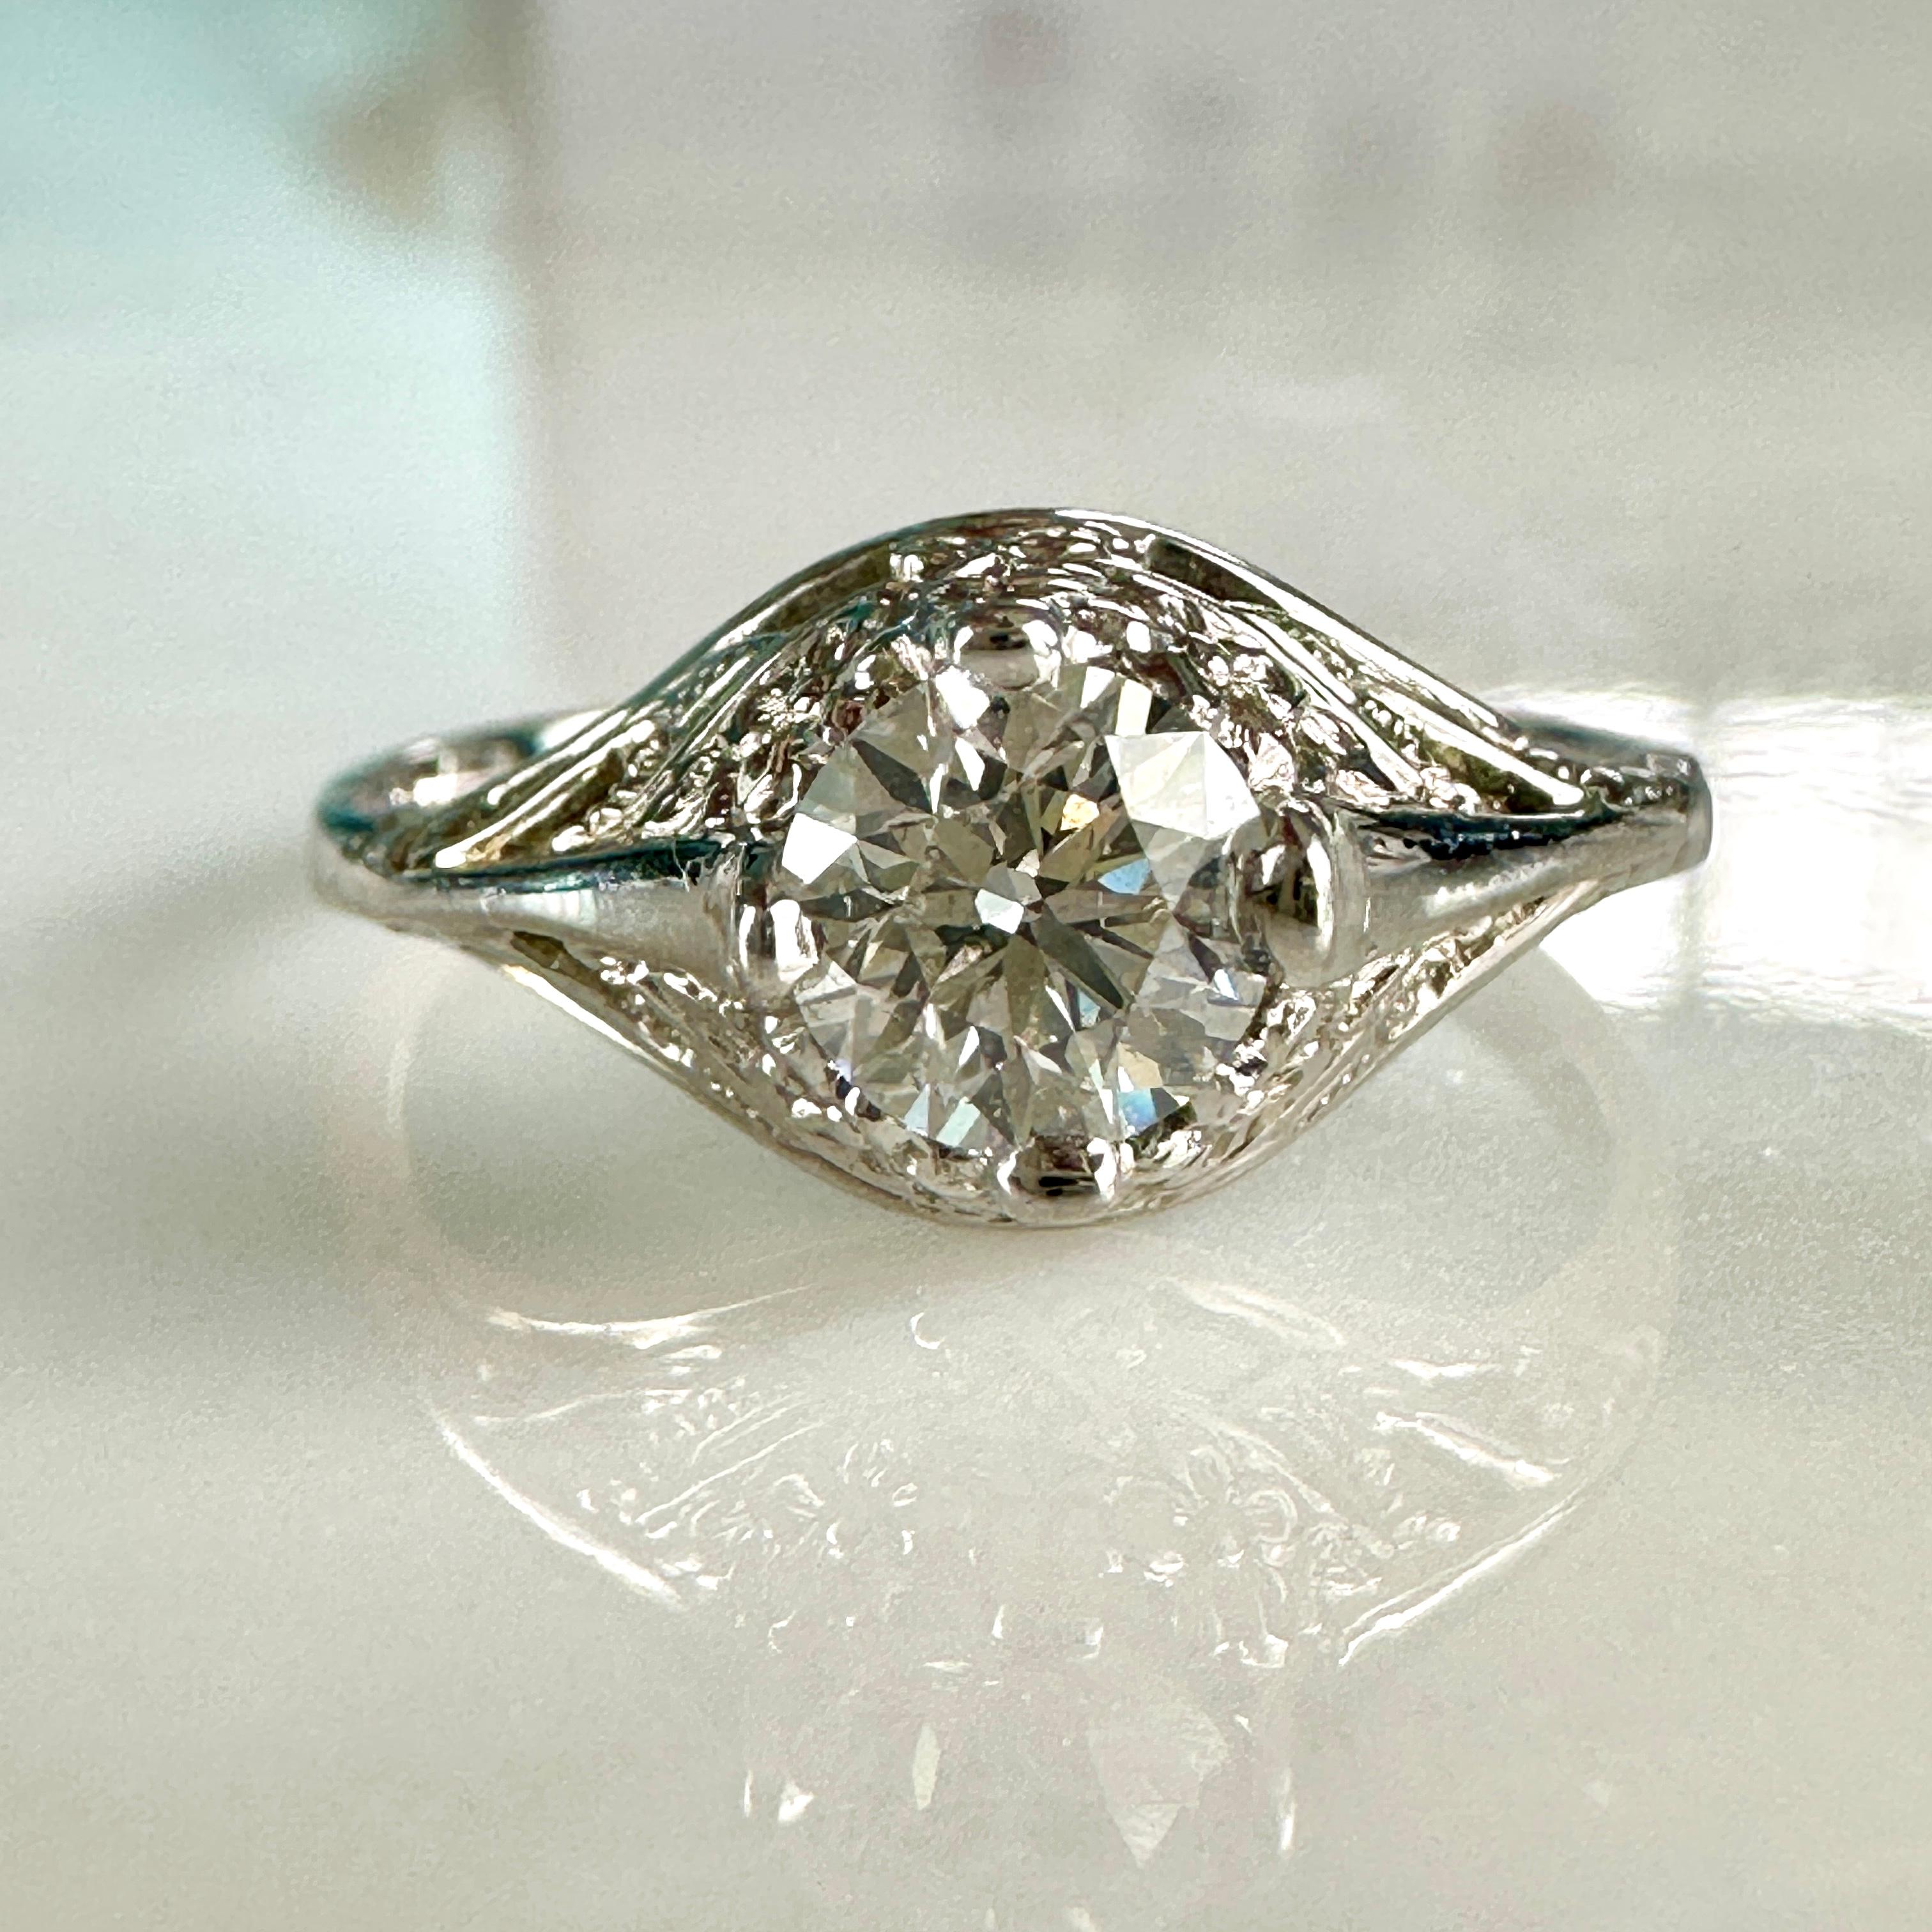 Einzelheiten:
Hübsches 14K Weißgold filigran  1/2 Karat Diamantring aus den 1920er Jahren! Das Filigran hat schöne süße Blumen in der 14K Gold. Die Höhe des Rings beträgt 5,6 mm, und der Diamant ist 5,25 mm groß und rund. Dieser Ring hat ein